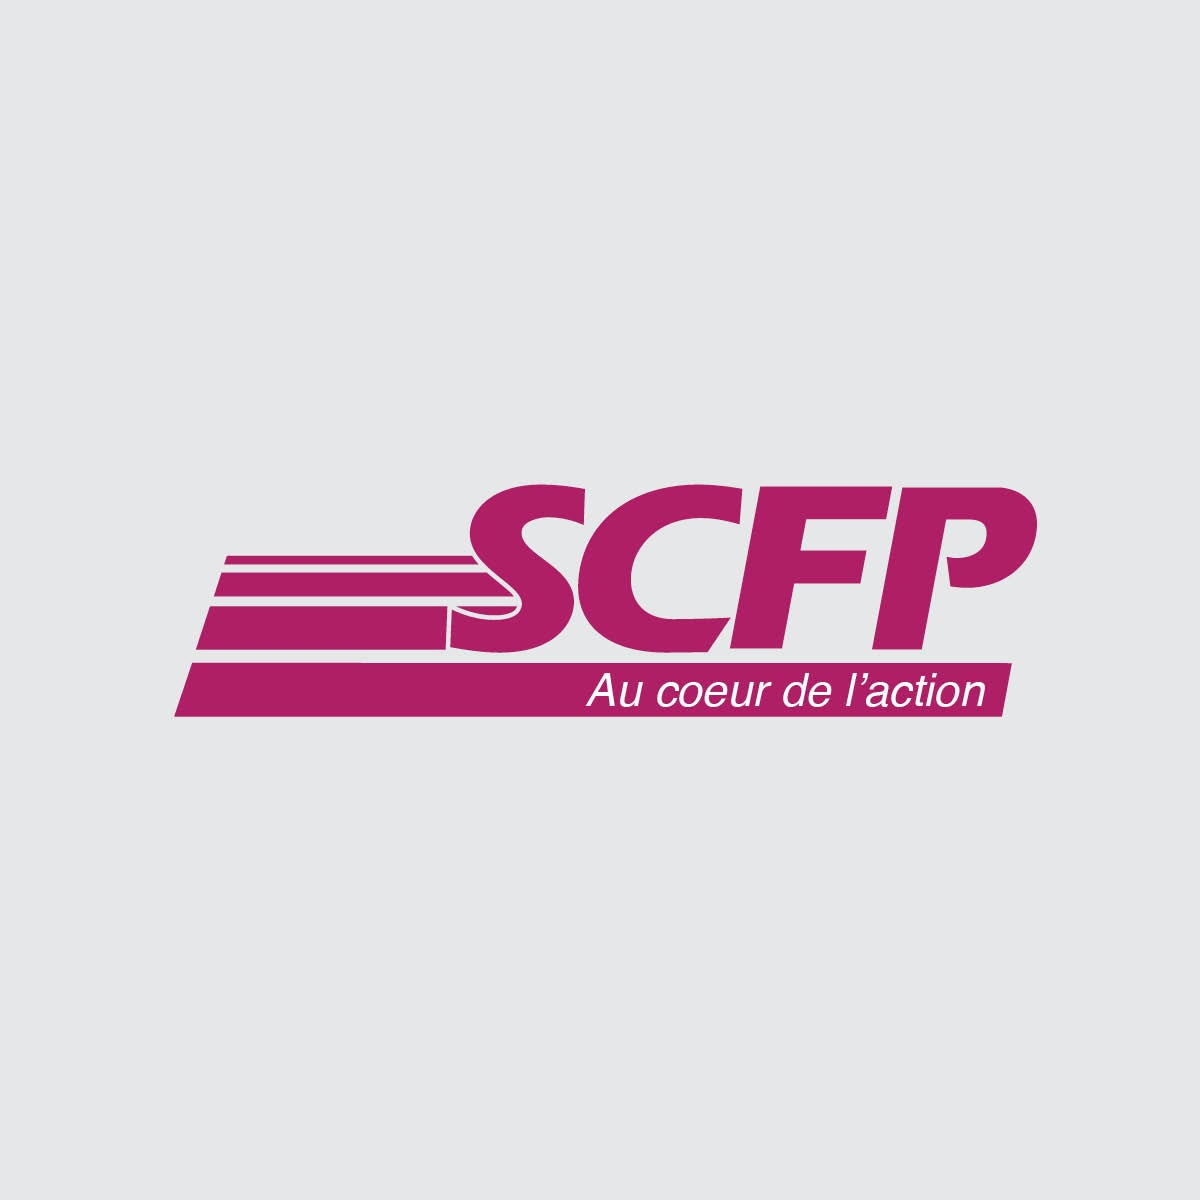 Le logo de l'an 2000 du SCFP